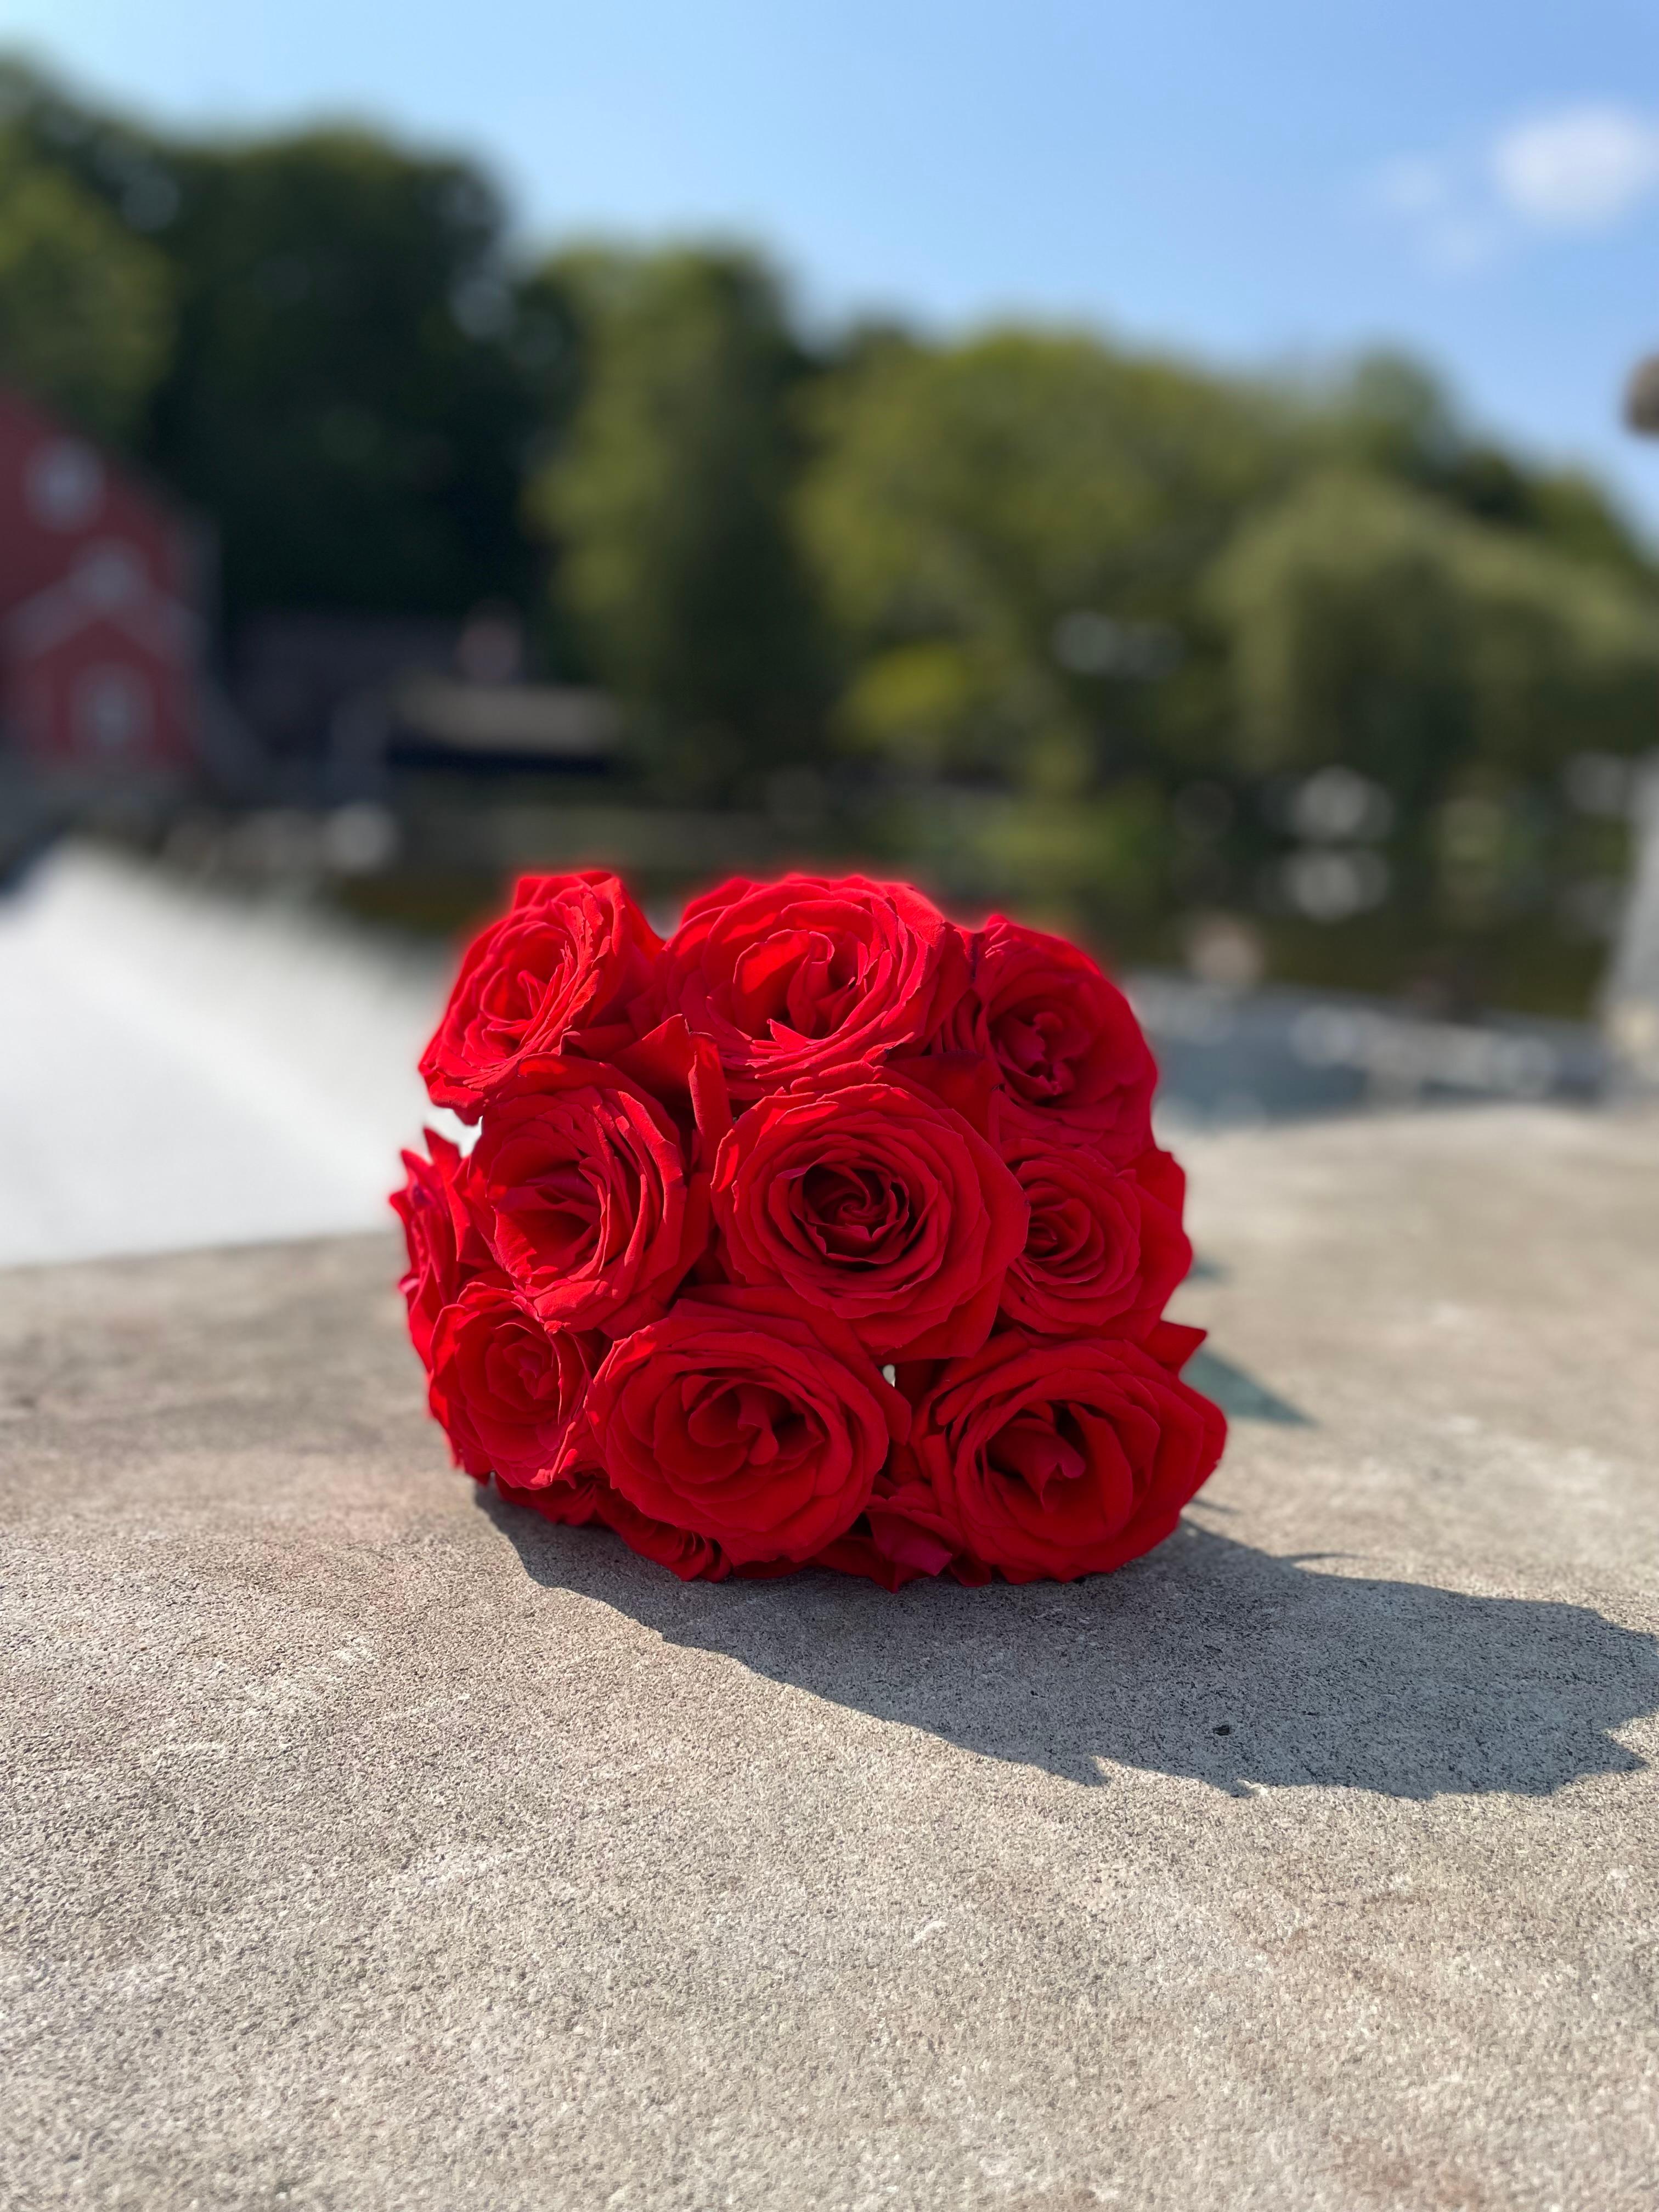 Ce mala artisanal de 108 perles de roses est une symphonie de roses rouges et roses, chantant leurs histoires séculaires d'amour, de passion et de force délicate.

Roulés à la main avec dévouement et sens artistique. Les roses ne sont que la moitié